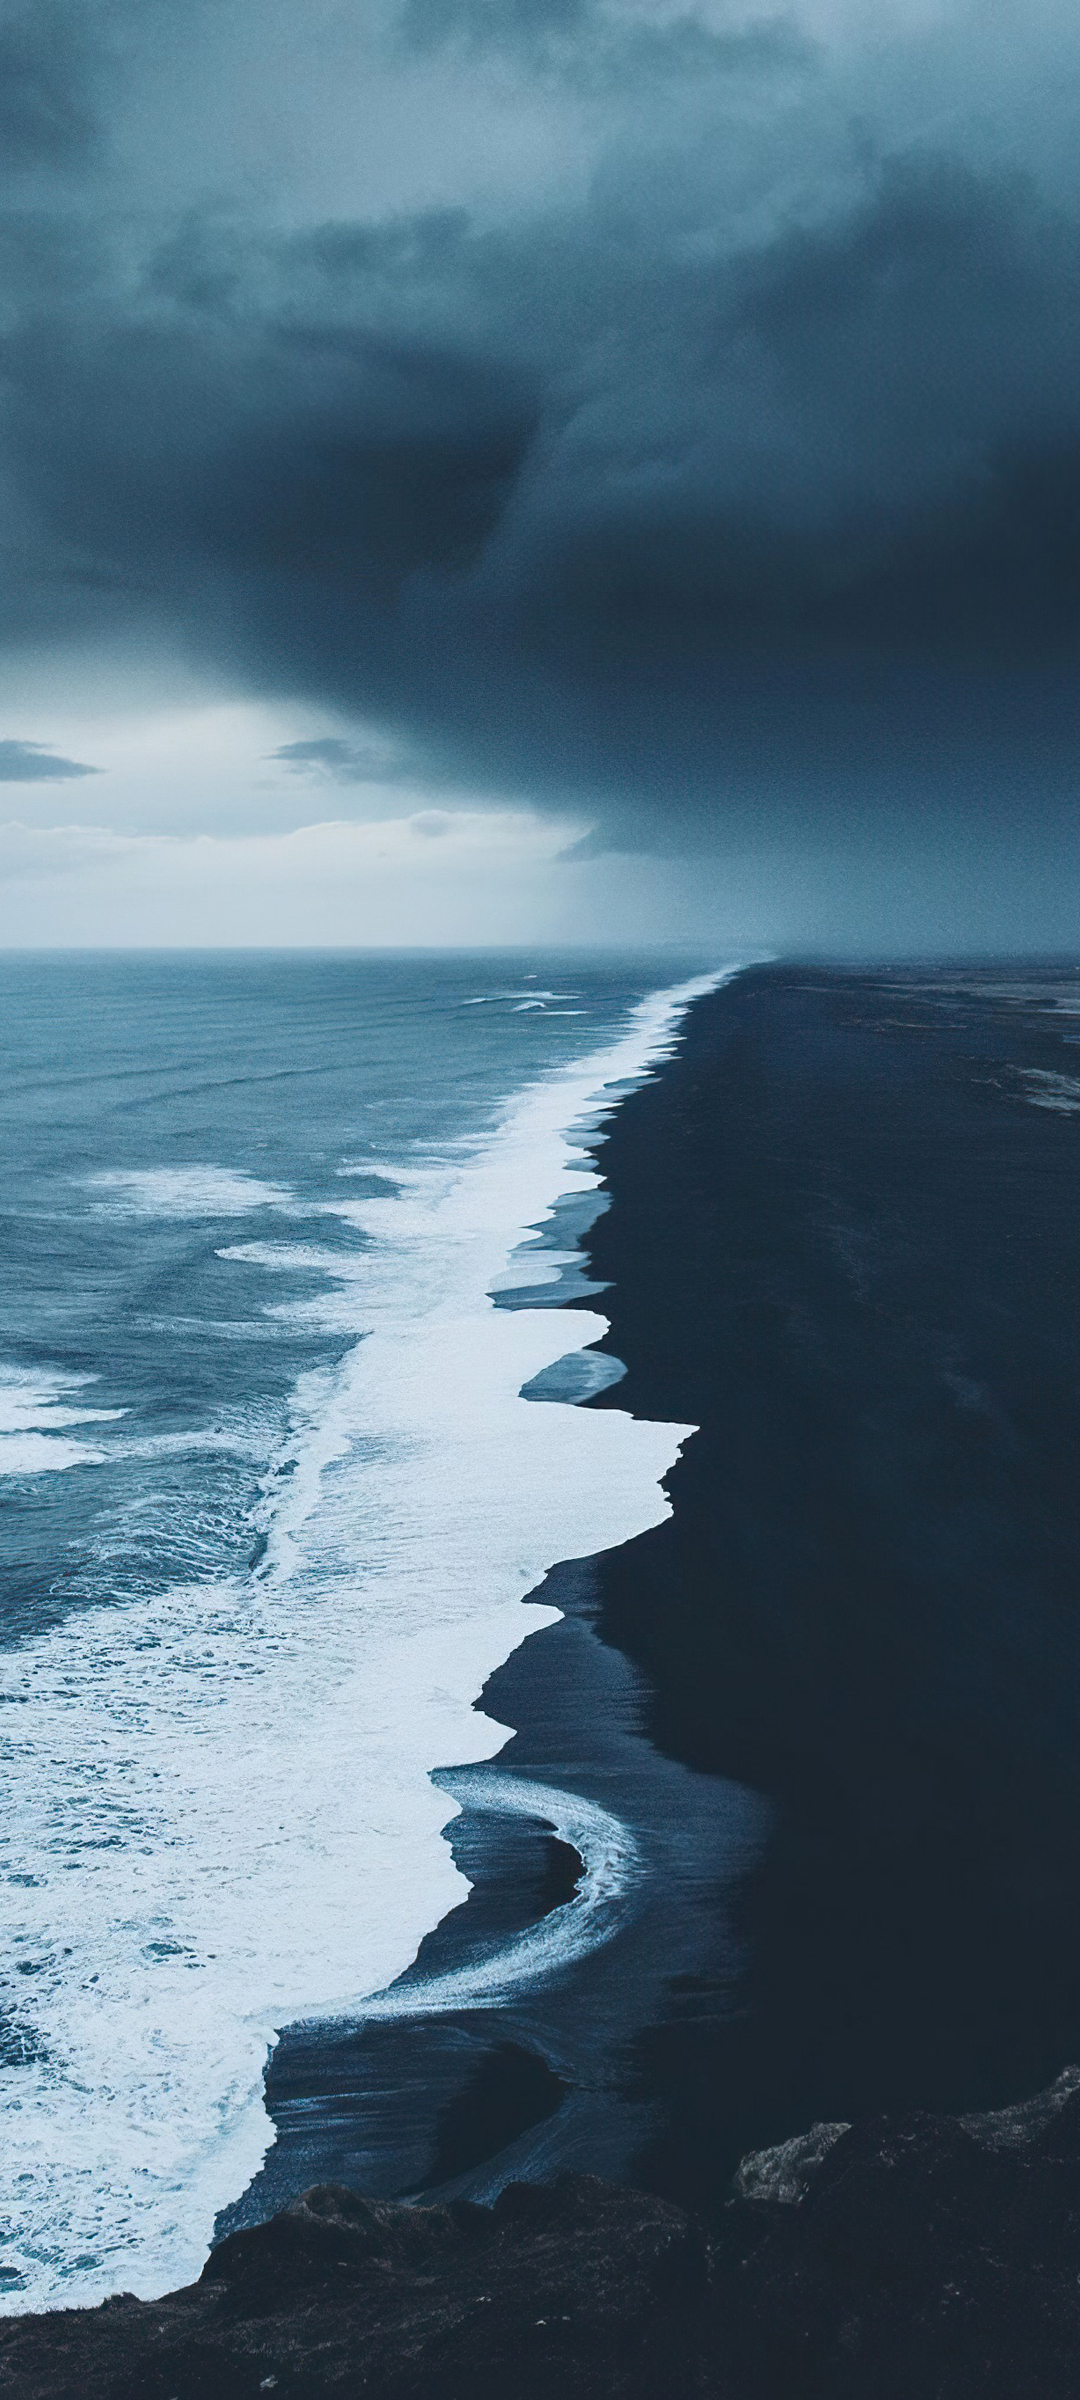 大海沙滩海浪天空黑白风景手机壁纸